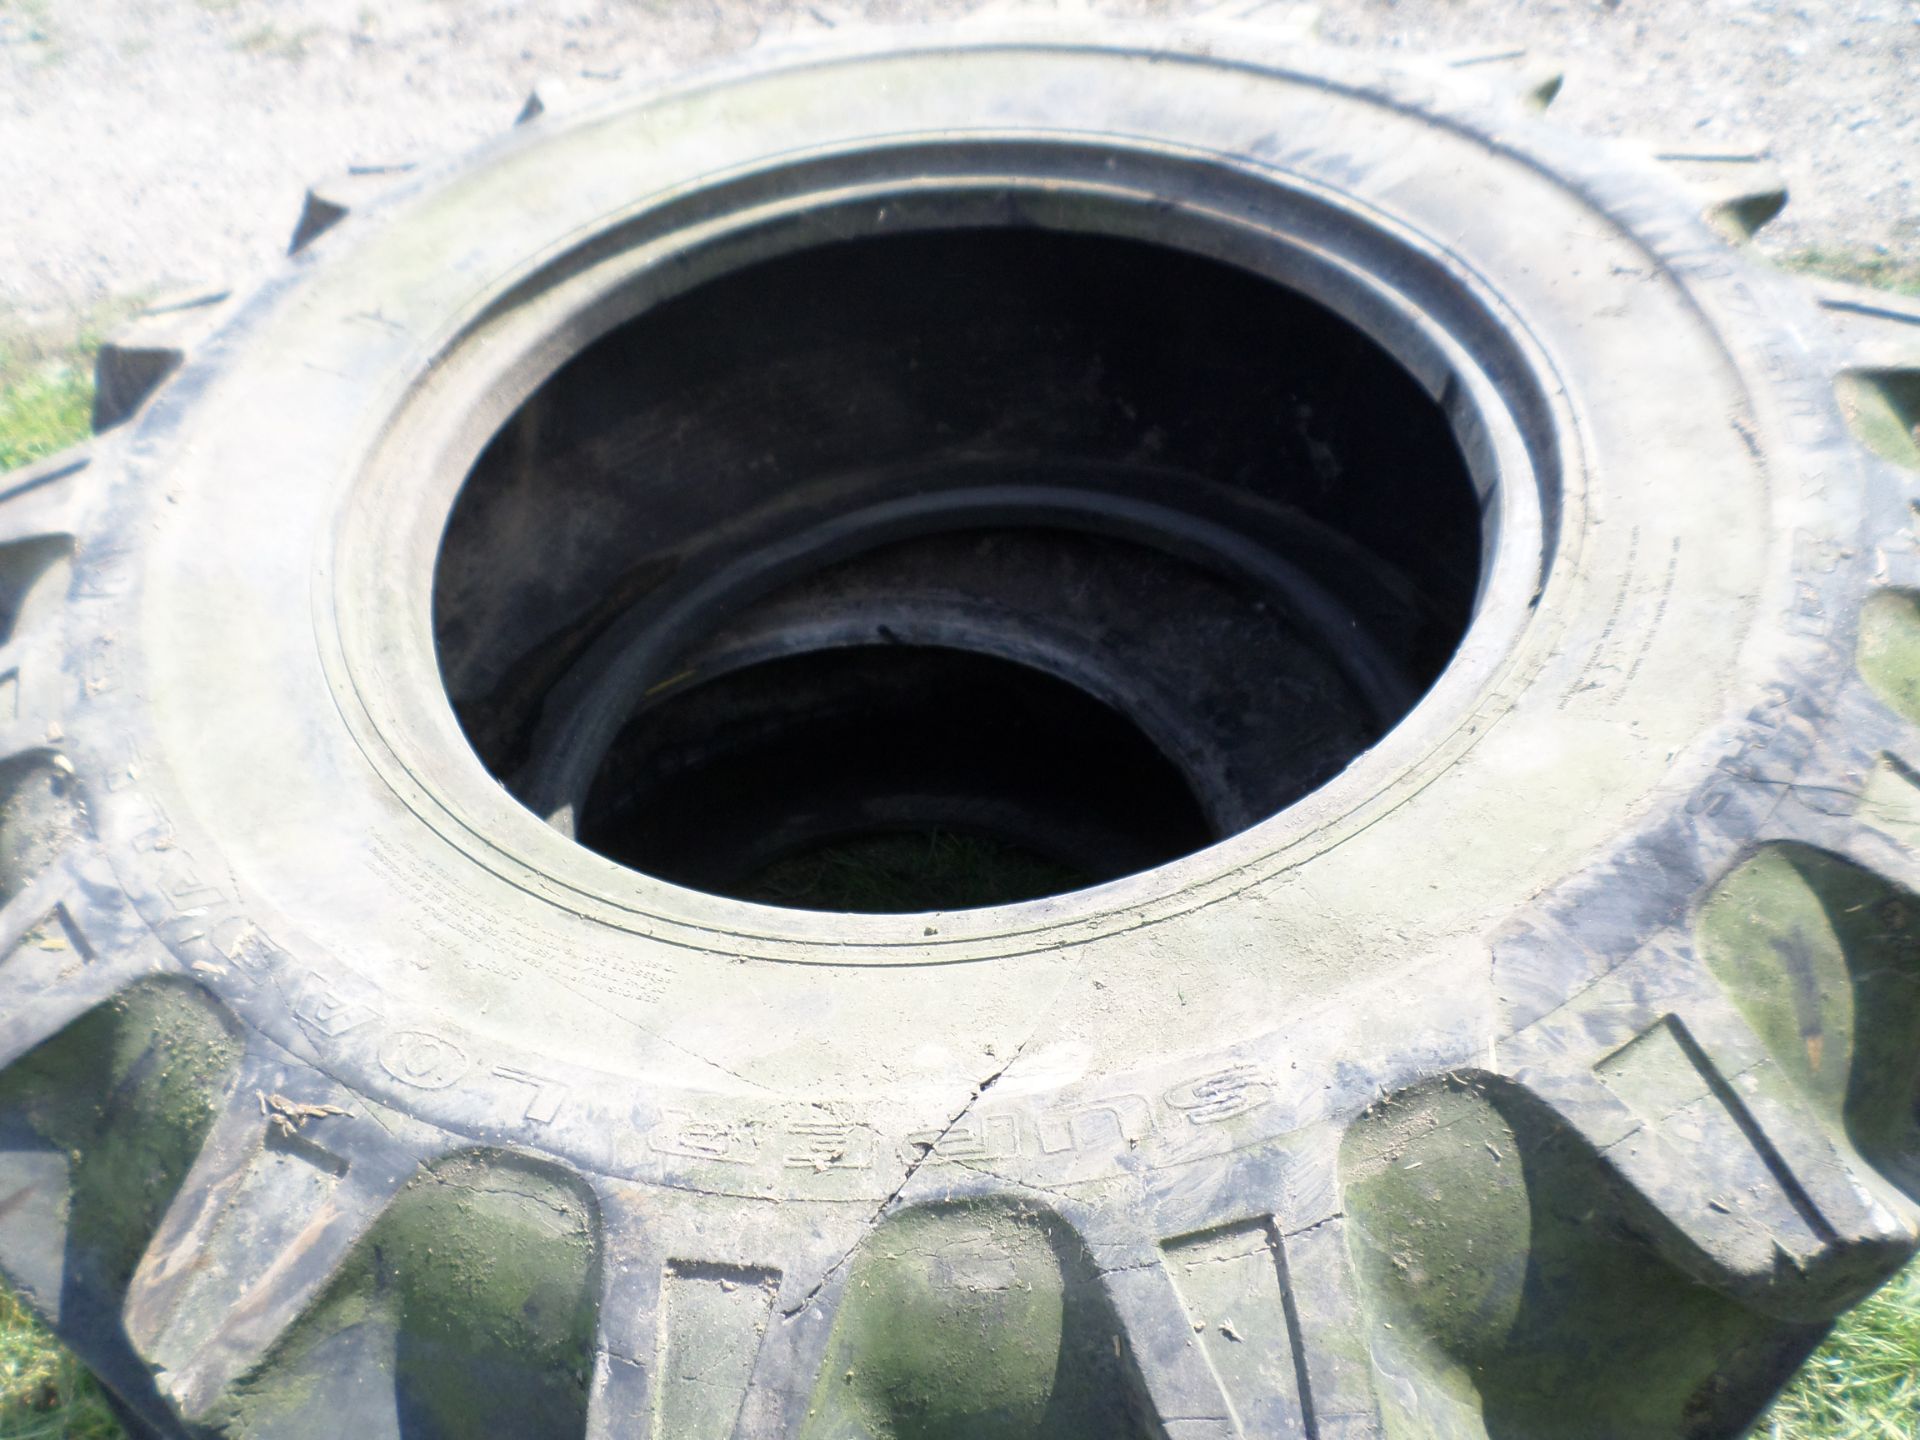 2 teleporter tyres 17.5/24 NO VAT - Image 2 of 2